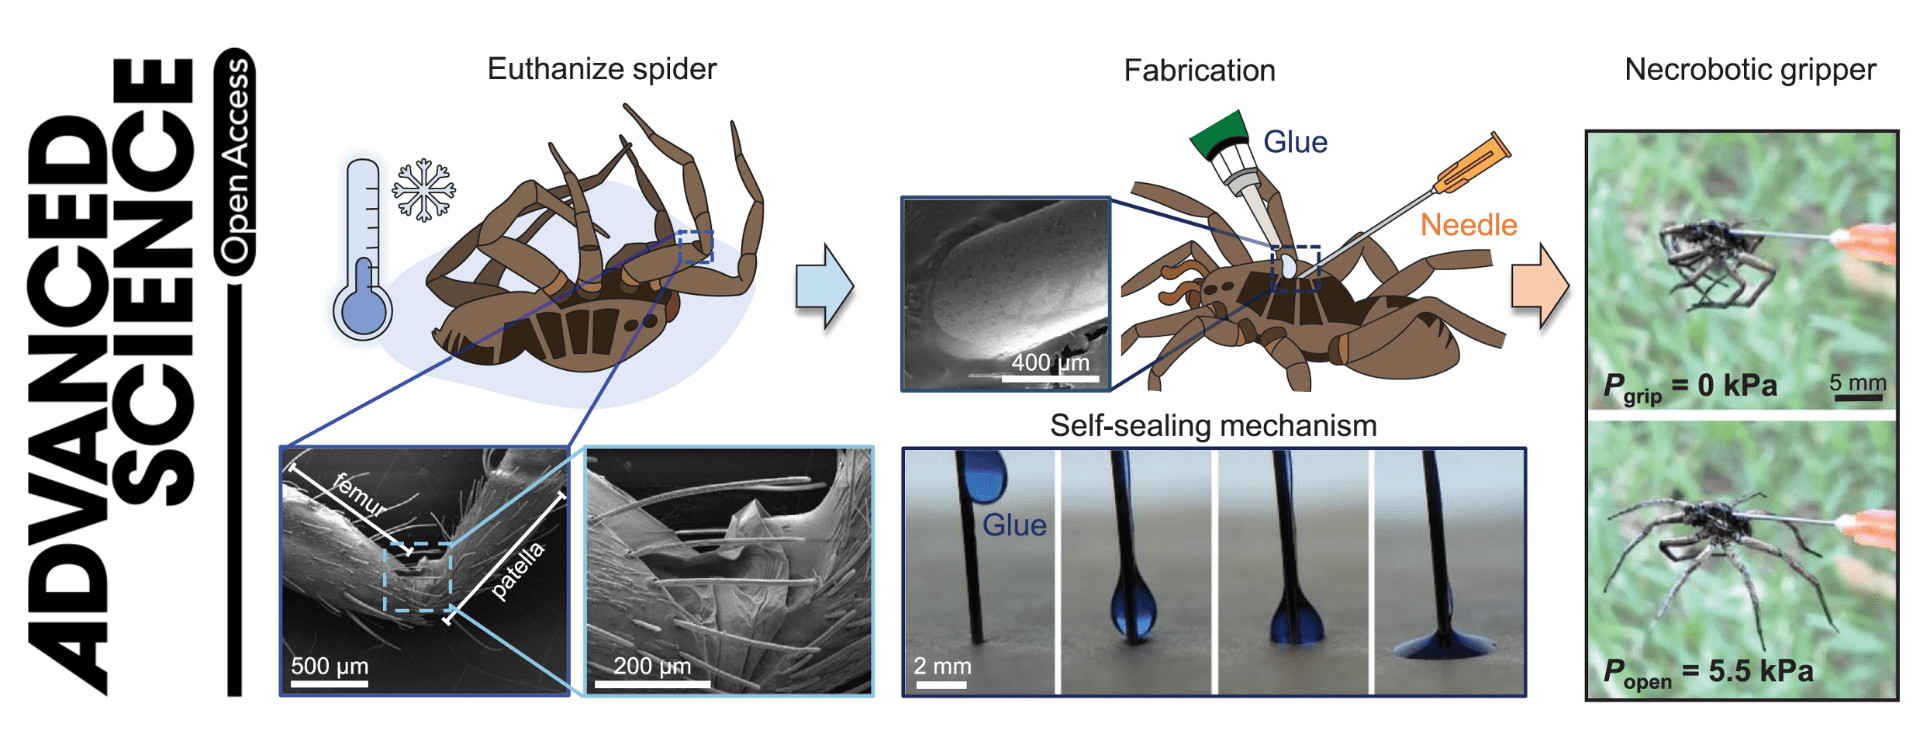 Necrobótica: cientistas usam aranhas mortas como garras de robô